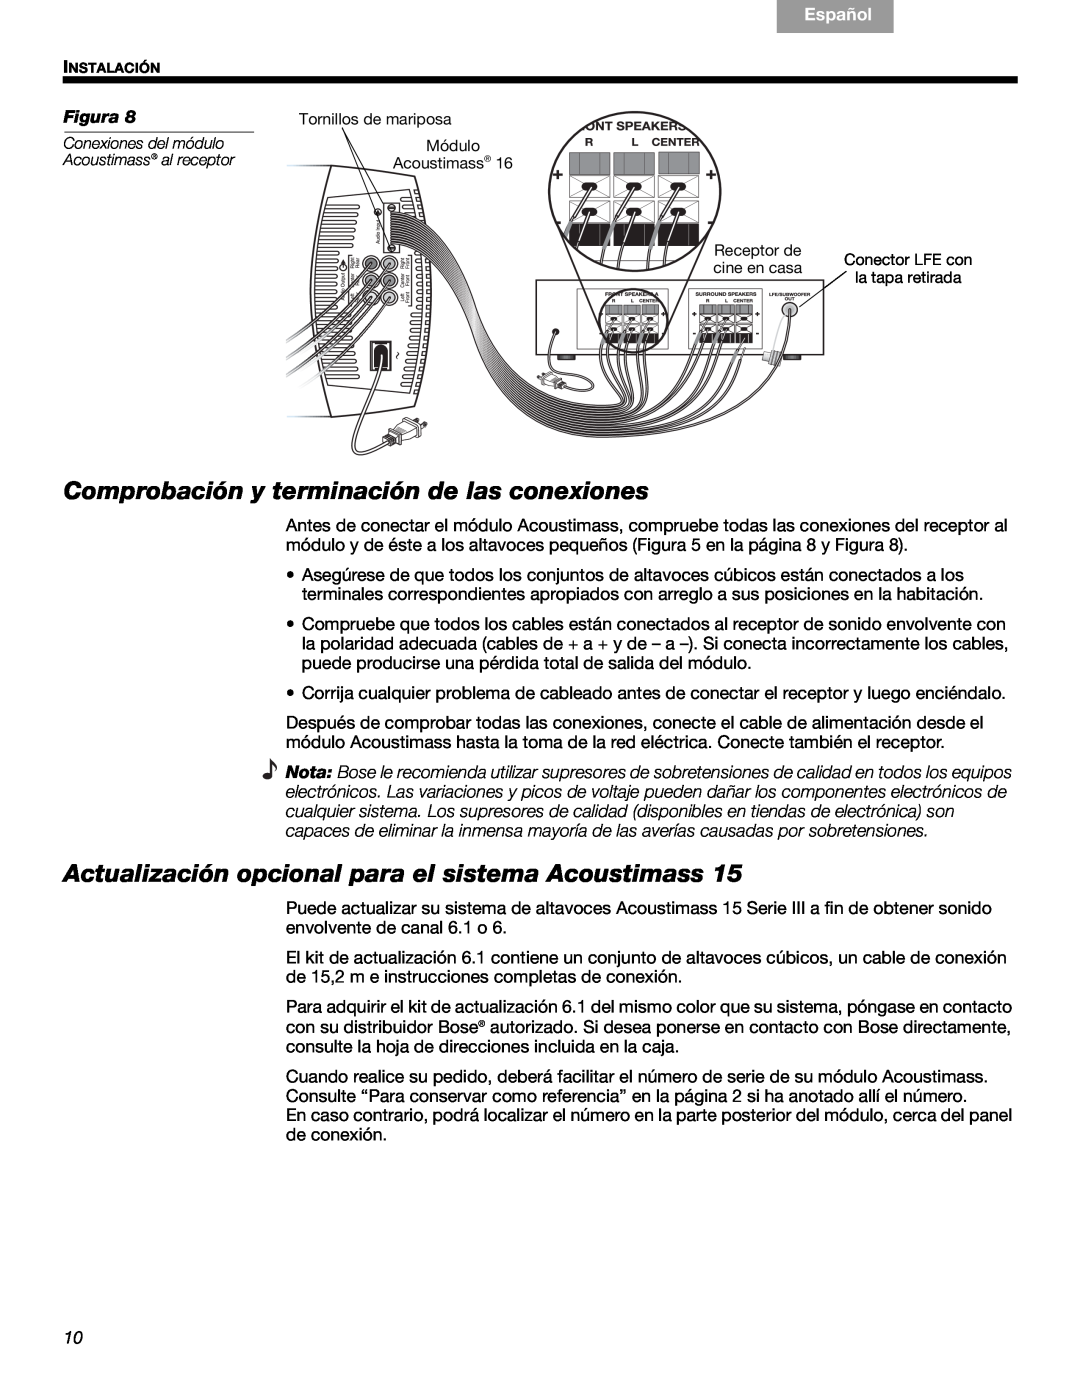 Bose 16, 15 Comprobación y terminación de las conexiones, Actualización opcional para el sistema Acoustimass, Français 